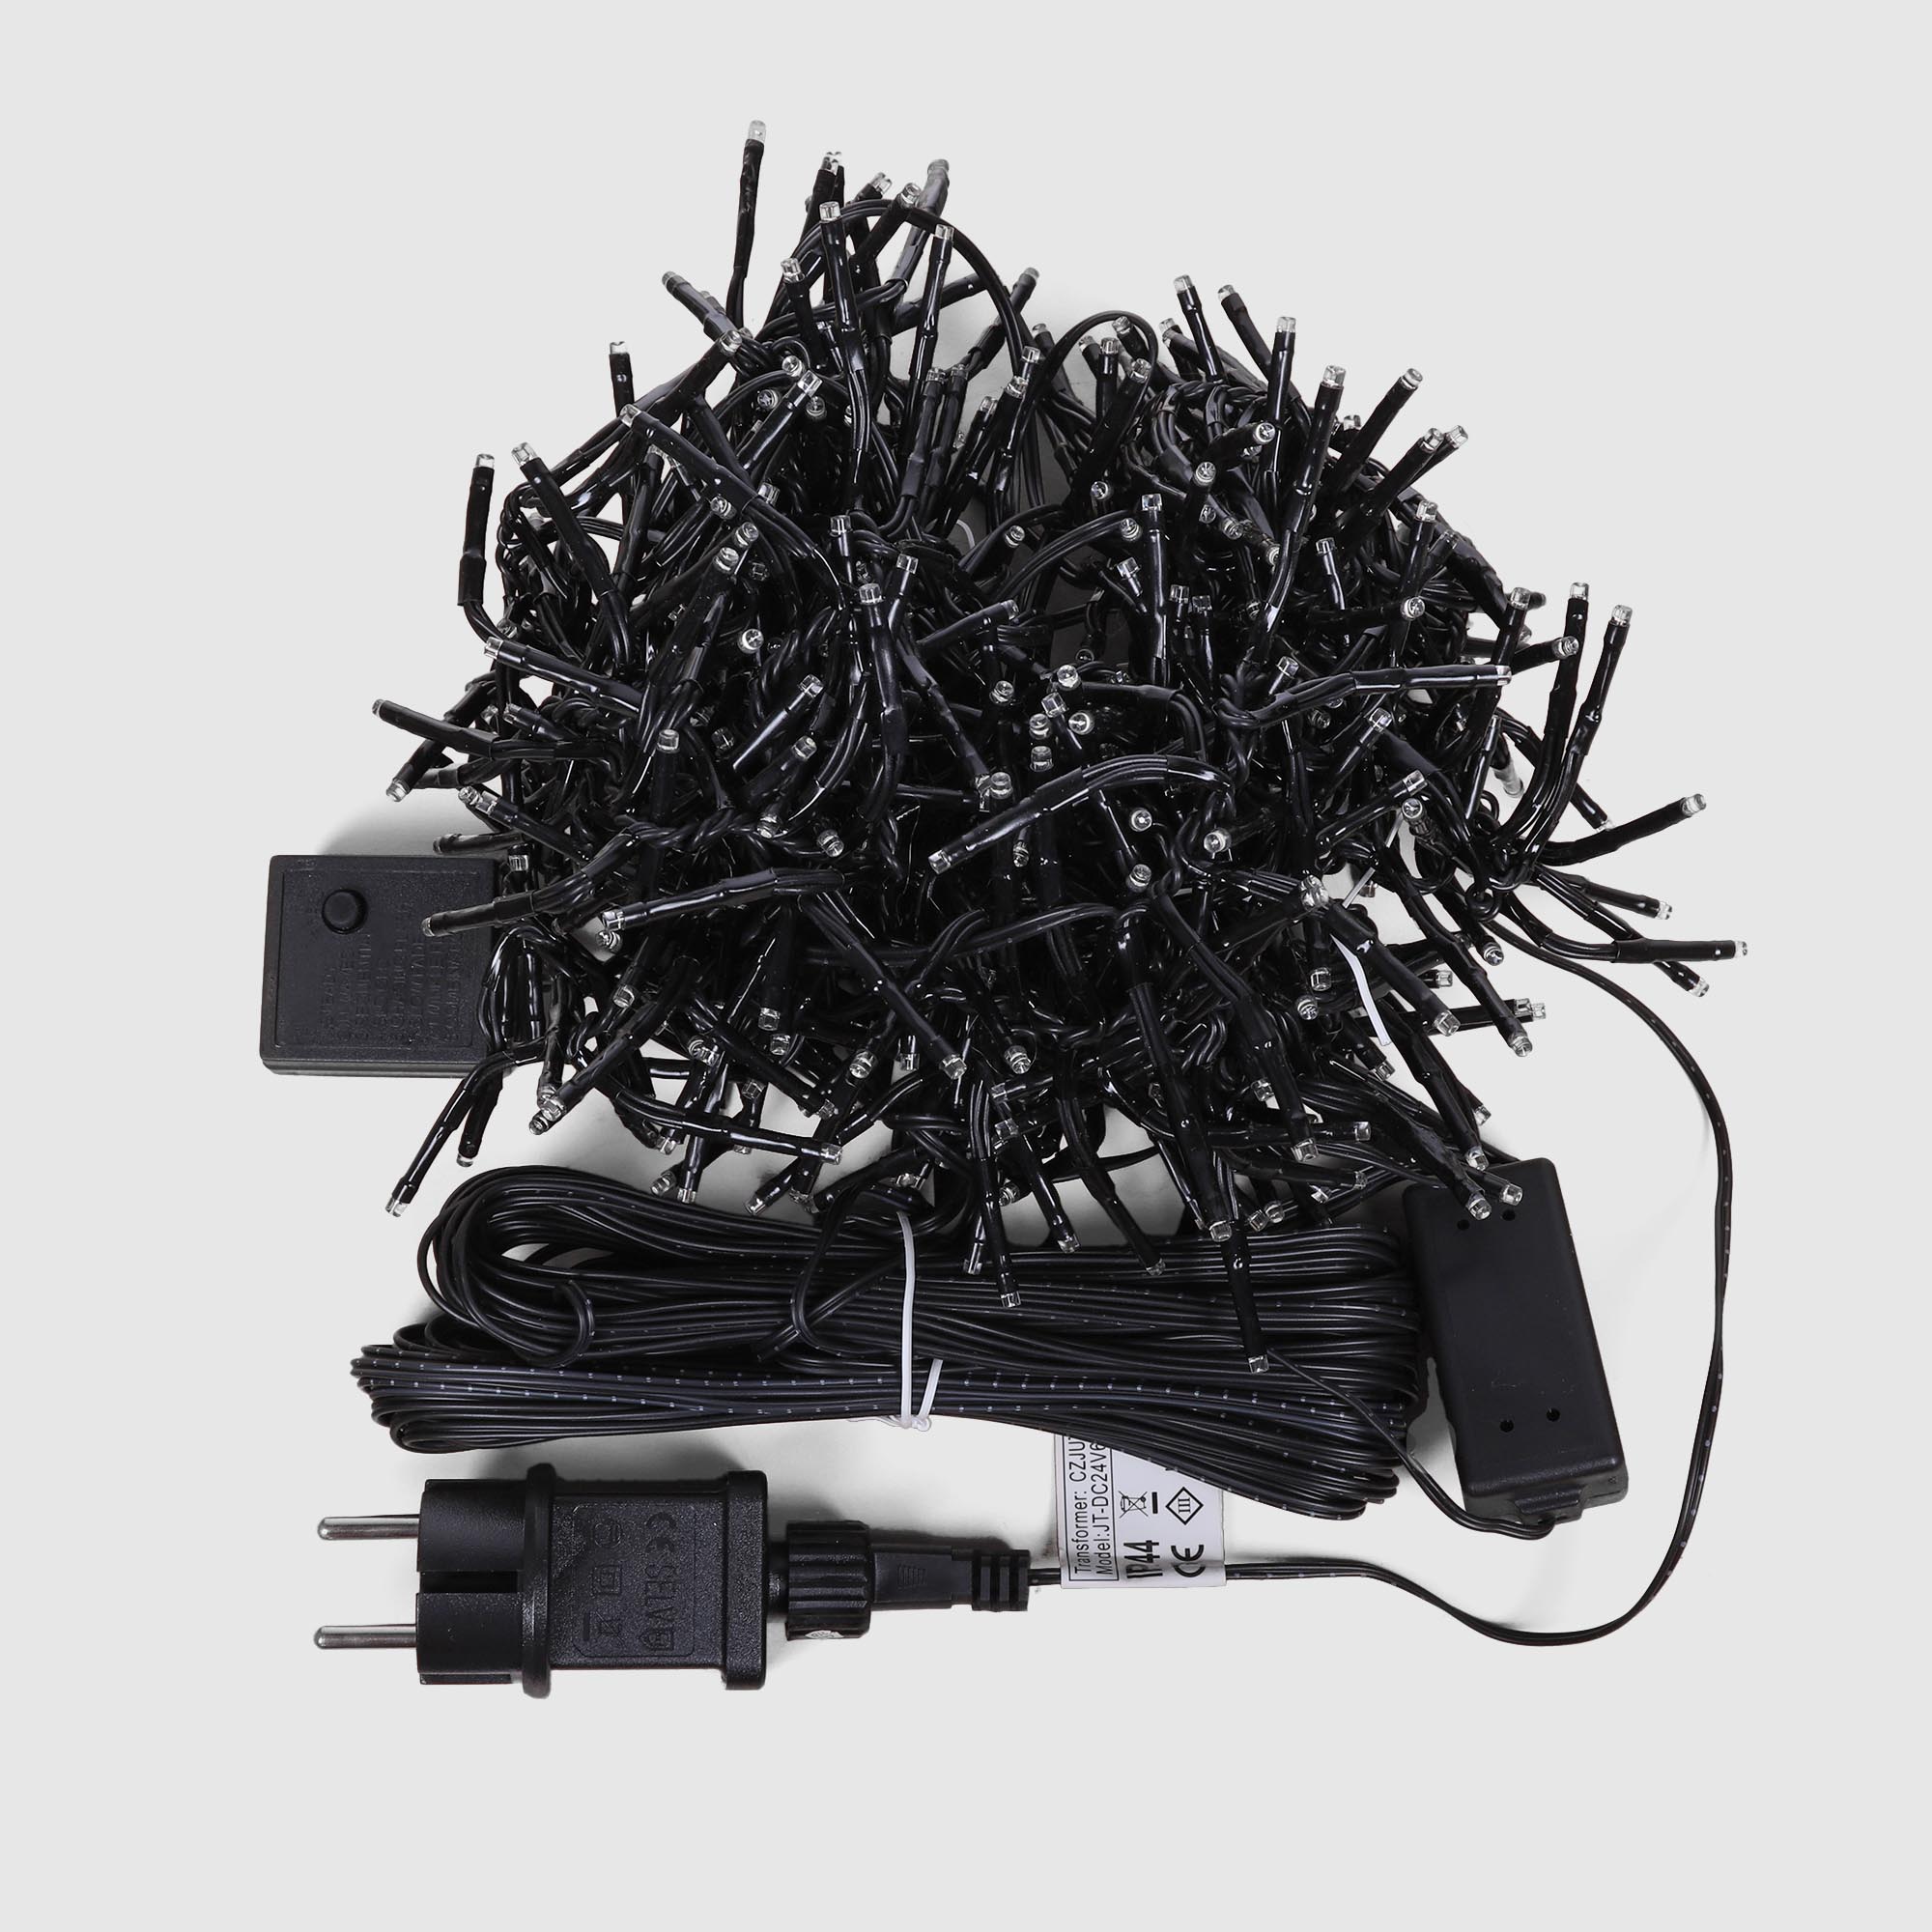 Электрогирлянда Kaemingk занавес 200 см 480 LED теплый белый, со стартовым шнуром, цвет черный - фото 5